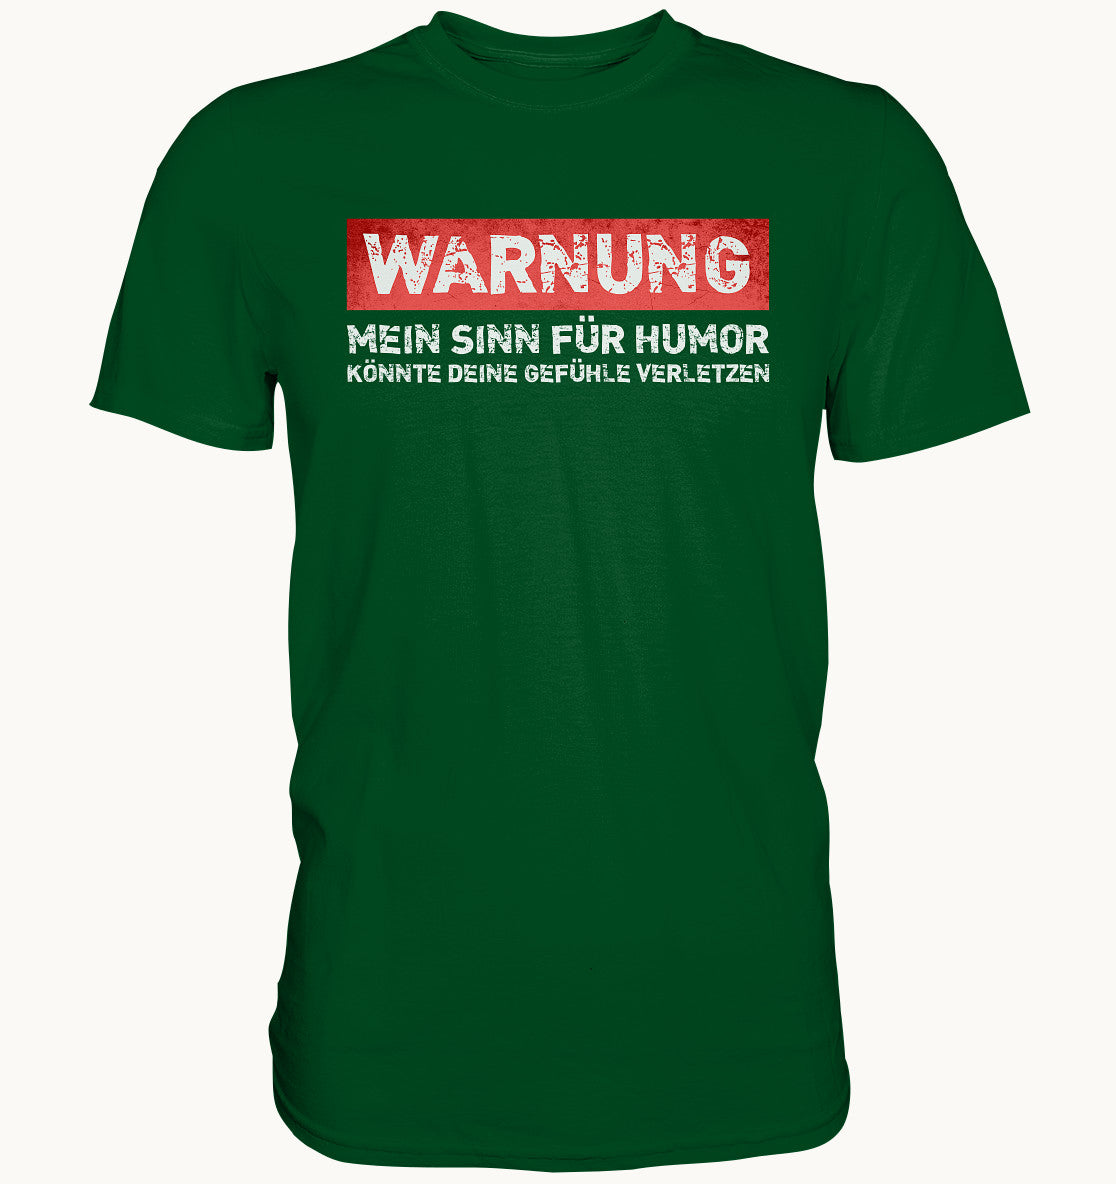 Warnung - Mein Sinn für Humor könnte deine Gefühle verletzen - Premium Shirt